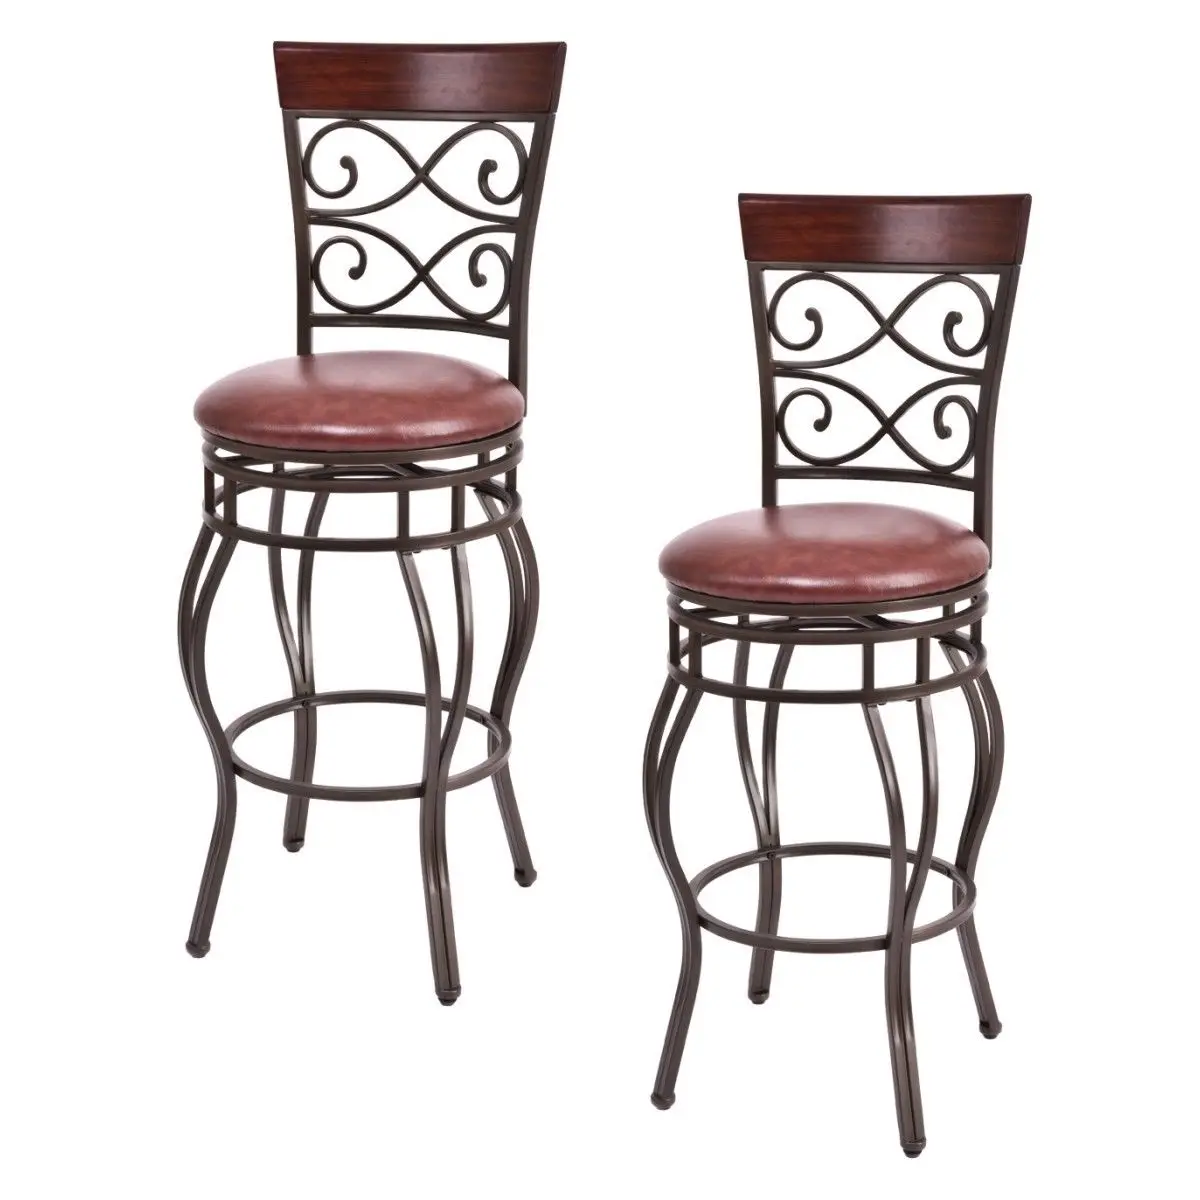 Costway набор из 2 старинных барных стульев поворотный мягкий сиденье бистро обеденный кухонный стул для паба